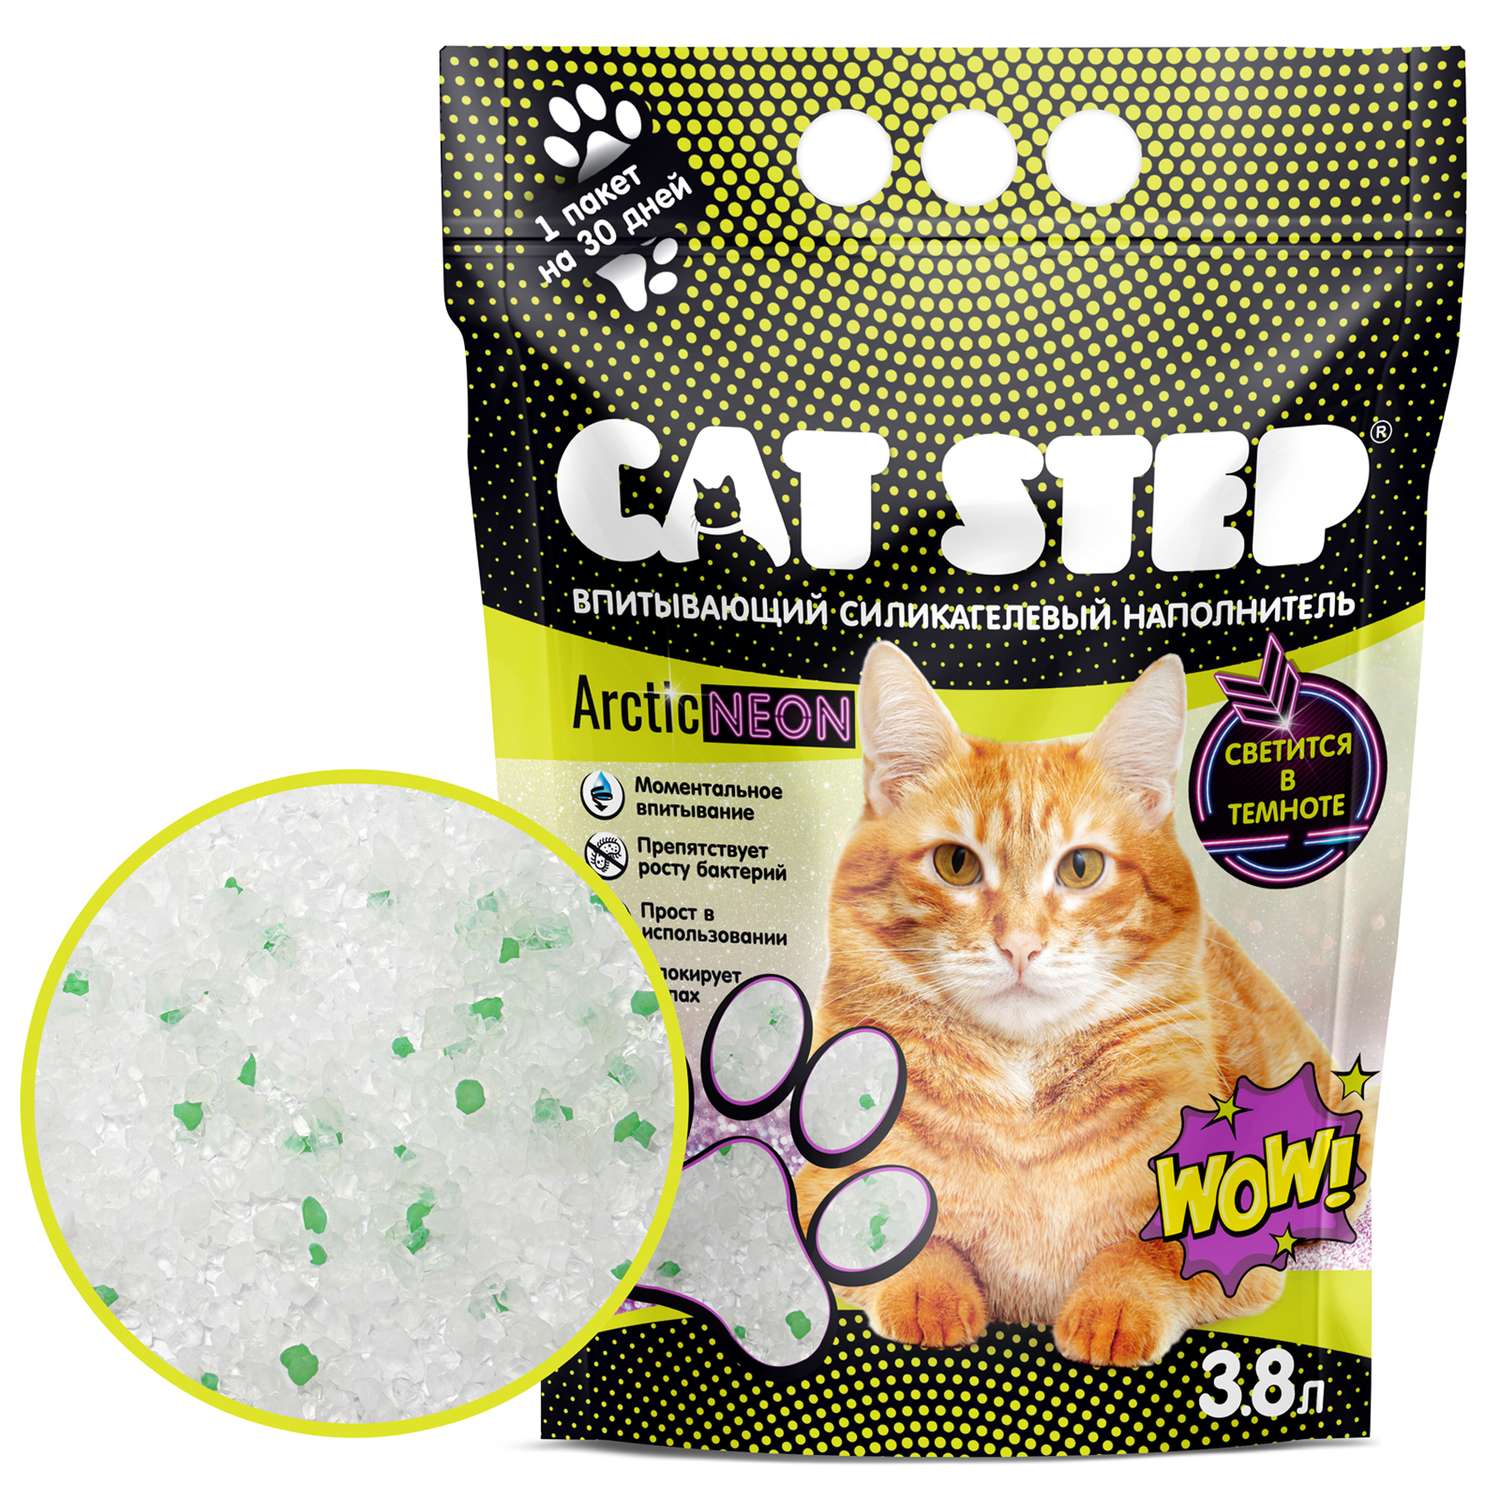 Наполнитель для кошек Cat Step Arctic Neon впитывающий силикагелевый 3.8л - фото 3